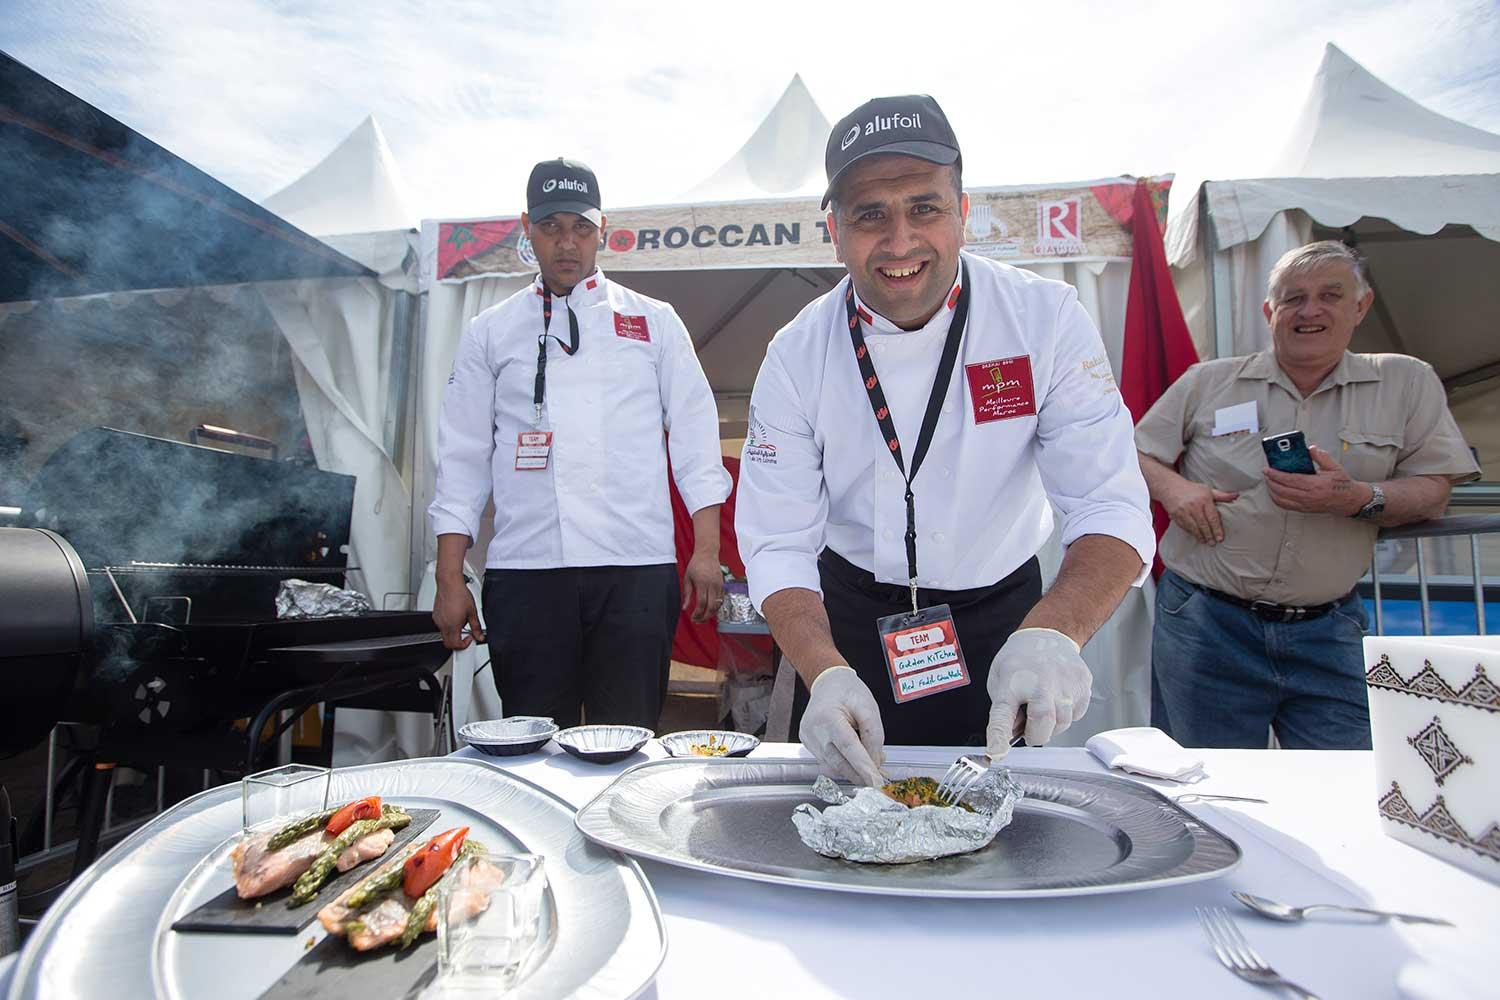 Marockanska laget ”Kom och smaka!” Mohamed Fadil Ouahhali och Fakhri Abdessamad i marockanska laget Golden kitchen bjuder på sin tävlingsrätt lax med örtigt kryddtäcke i snygga snäckformade skålar. Provsmakandet lyfter faktiskt Grill- och BBQ-VM högt över andra världsmästerskap.